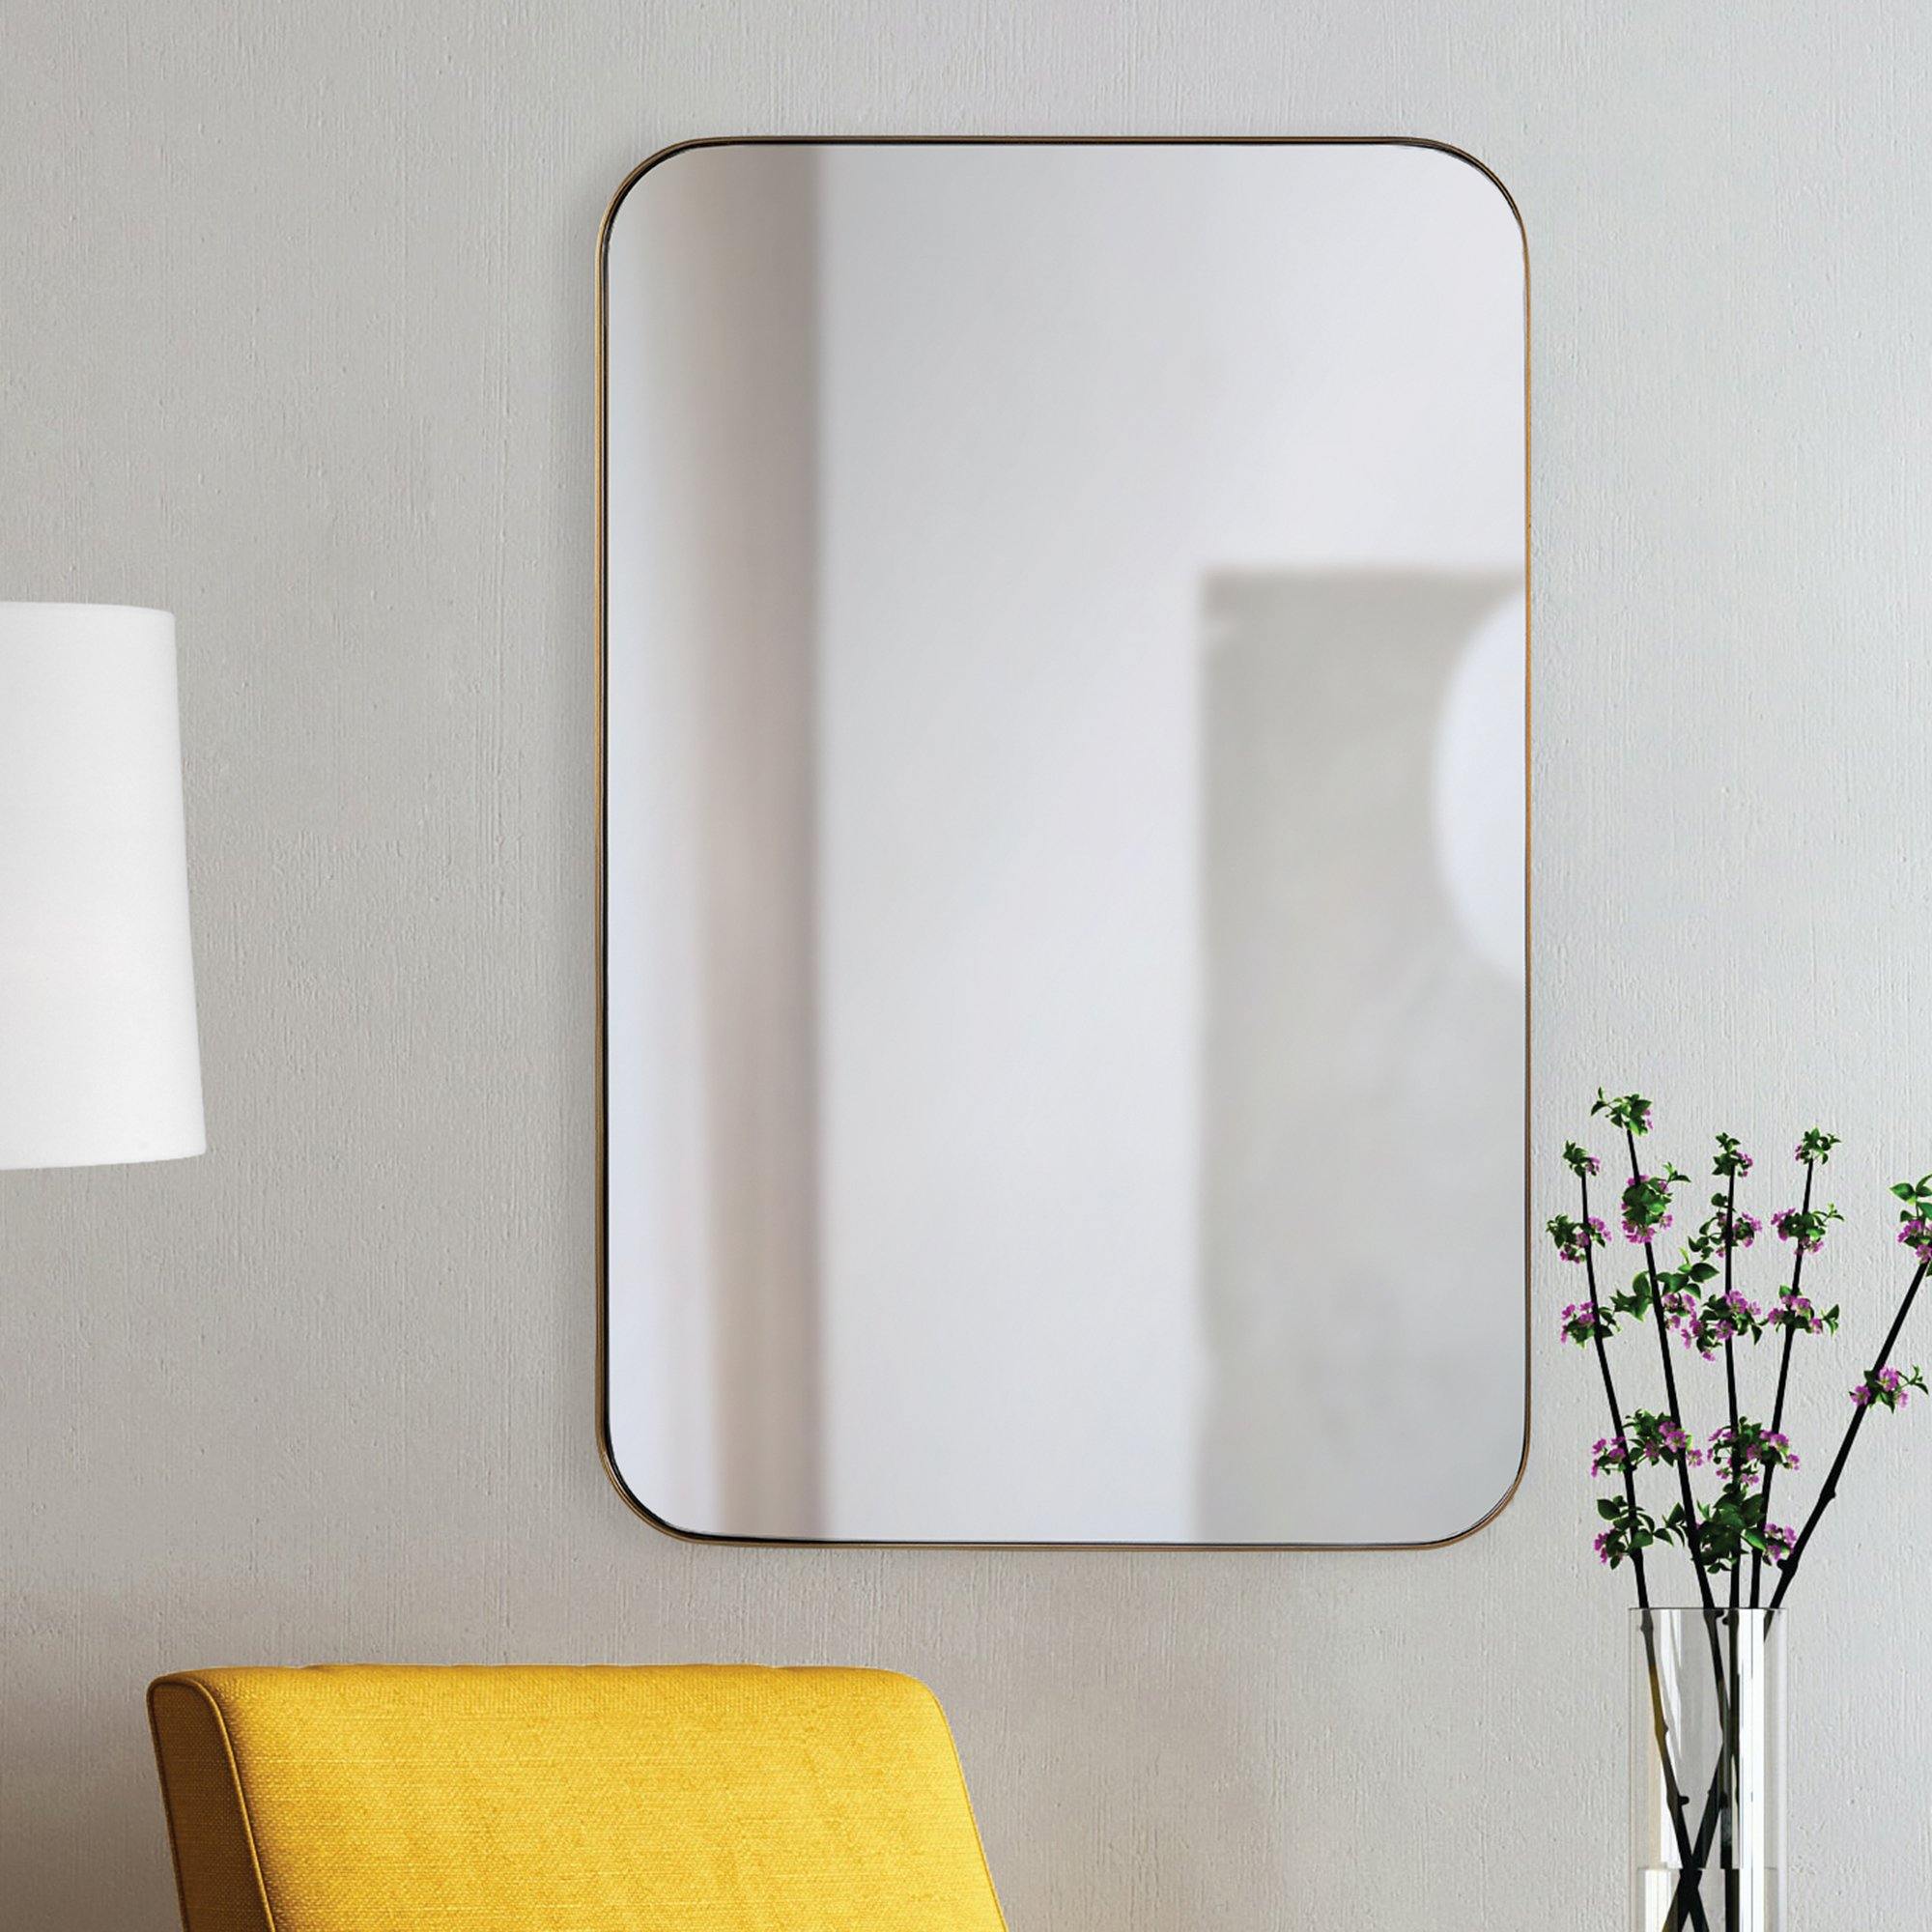 Edwin Mirror - Reimagine Designs - mirror, new